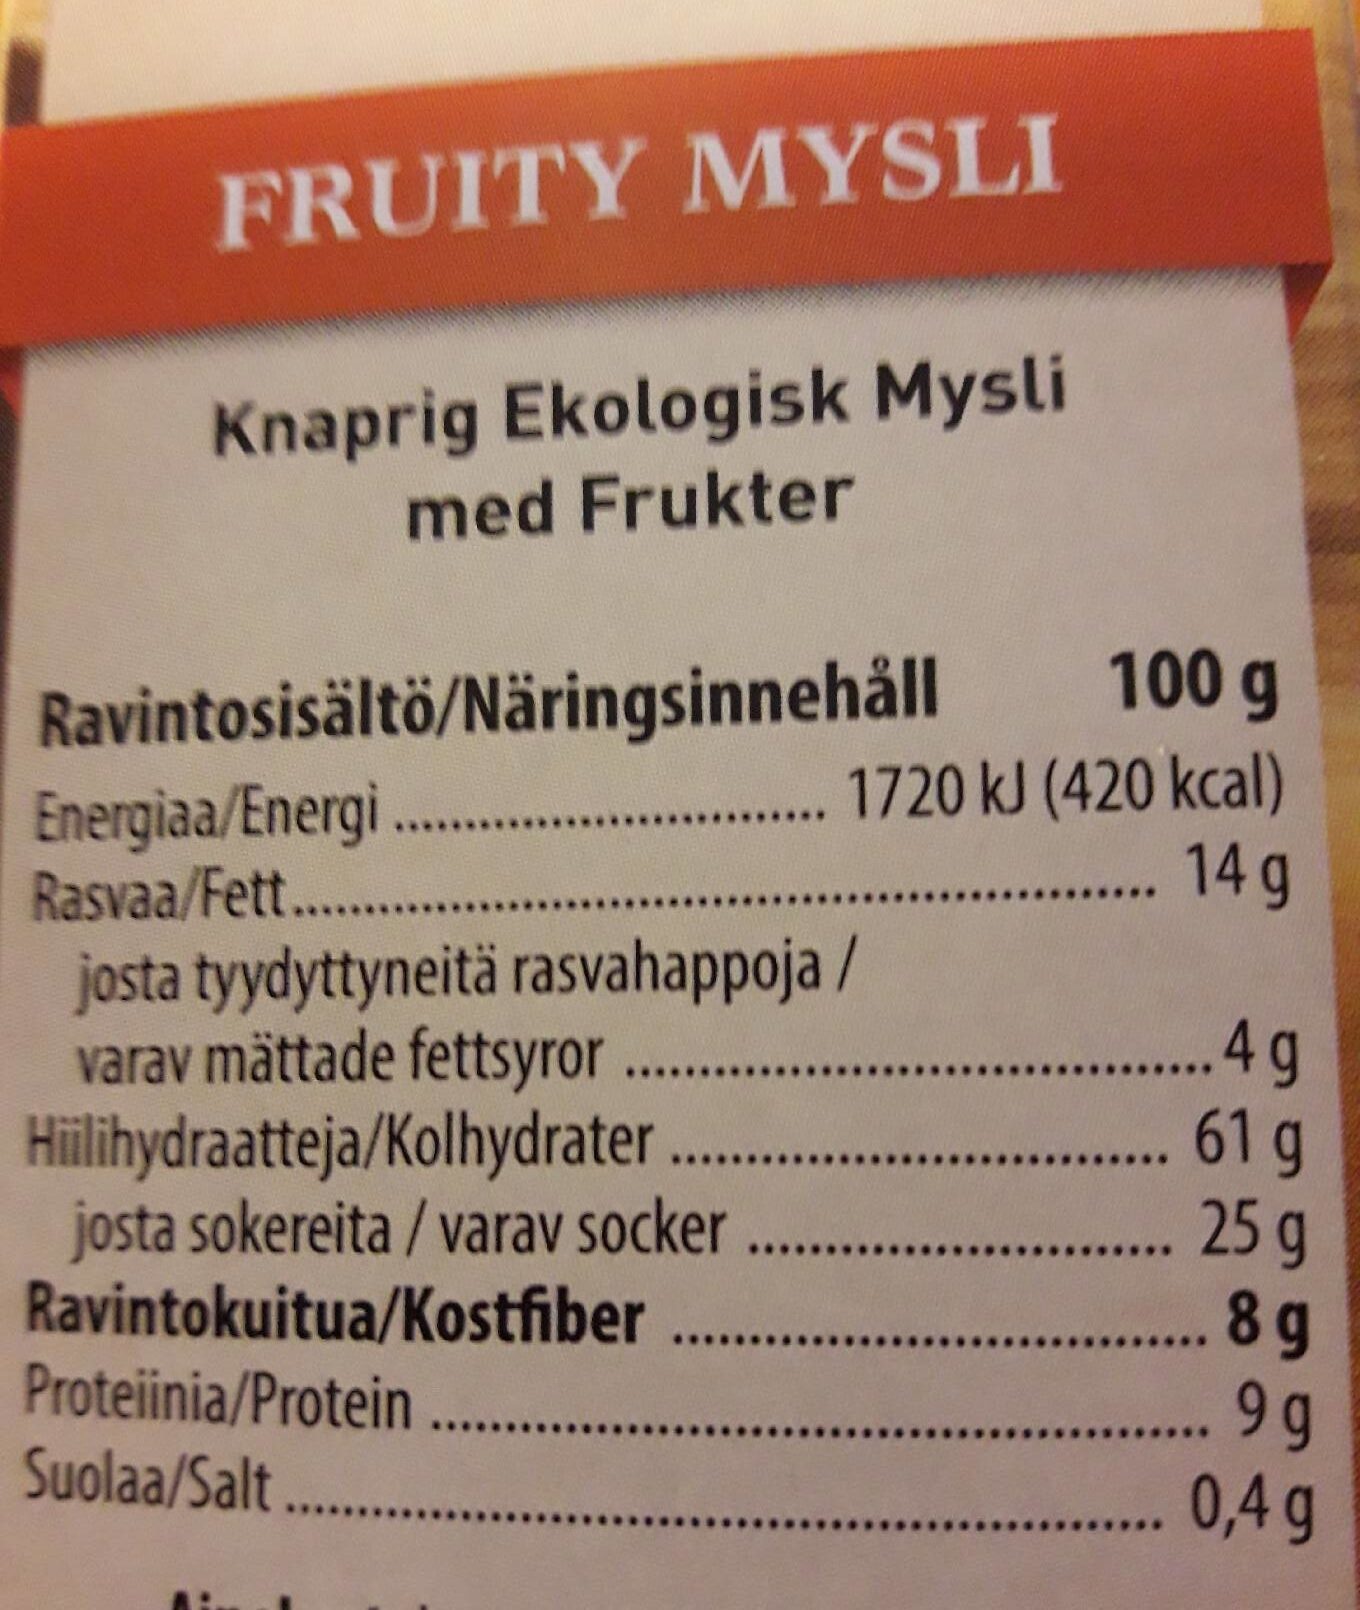 Fruity Mysli - Ravintosisältö